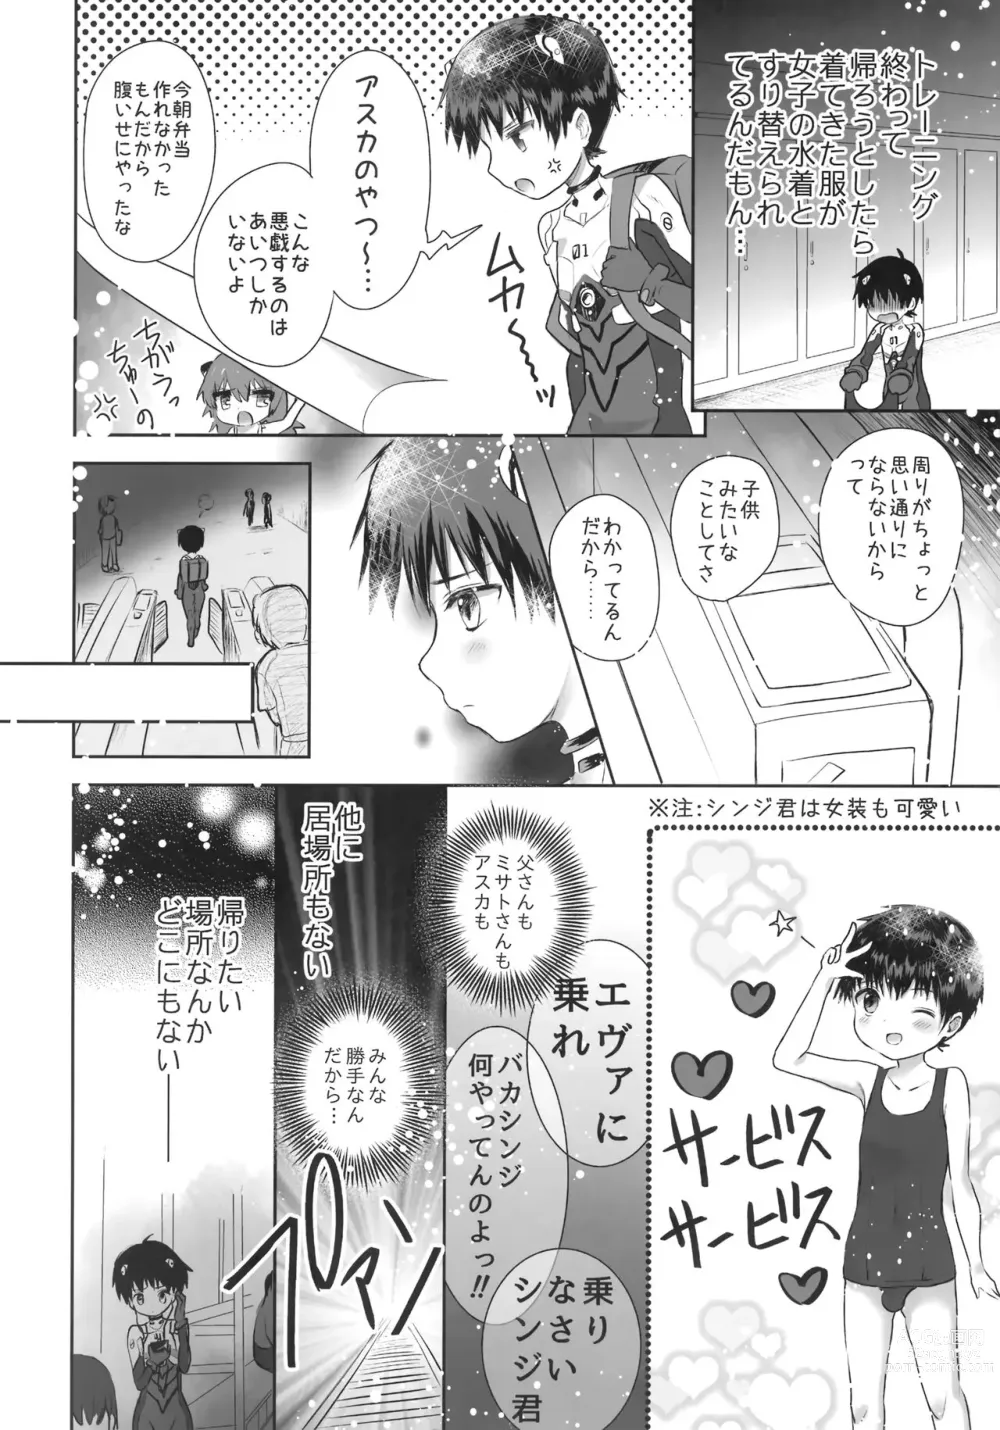 Page 3 of doujinshi Plugsuit o Kita Mama Notte Kure, Shinji.